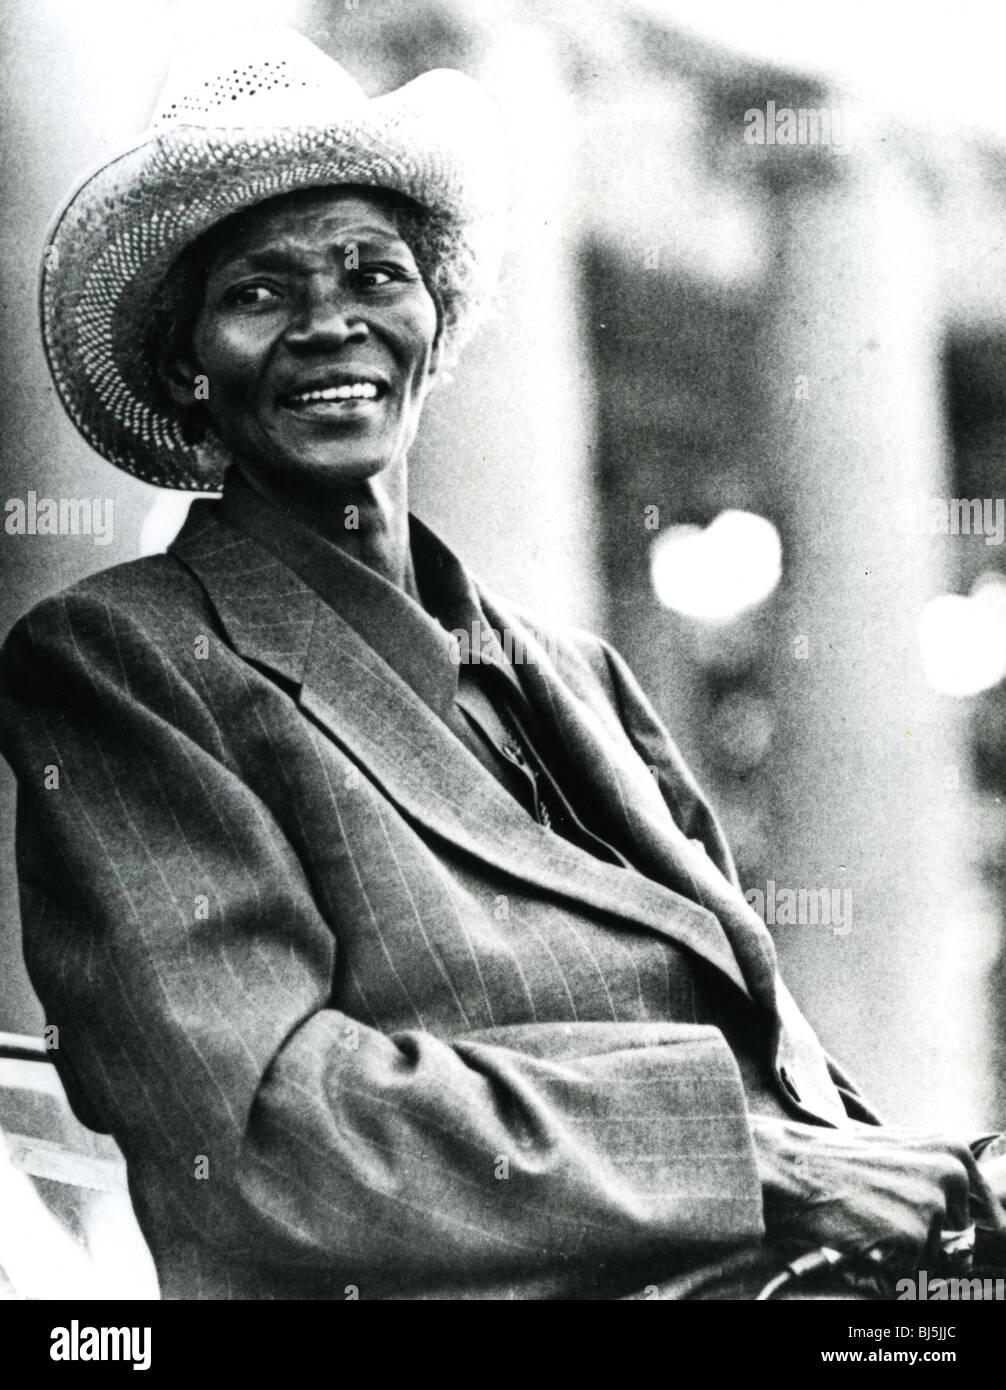 WILLIE MAE 'Big Mama' THORNTON --NOUS R&B et blues singer (1926-1984) Banque D'Images